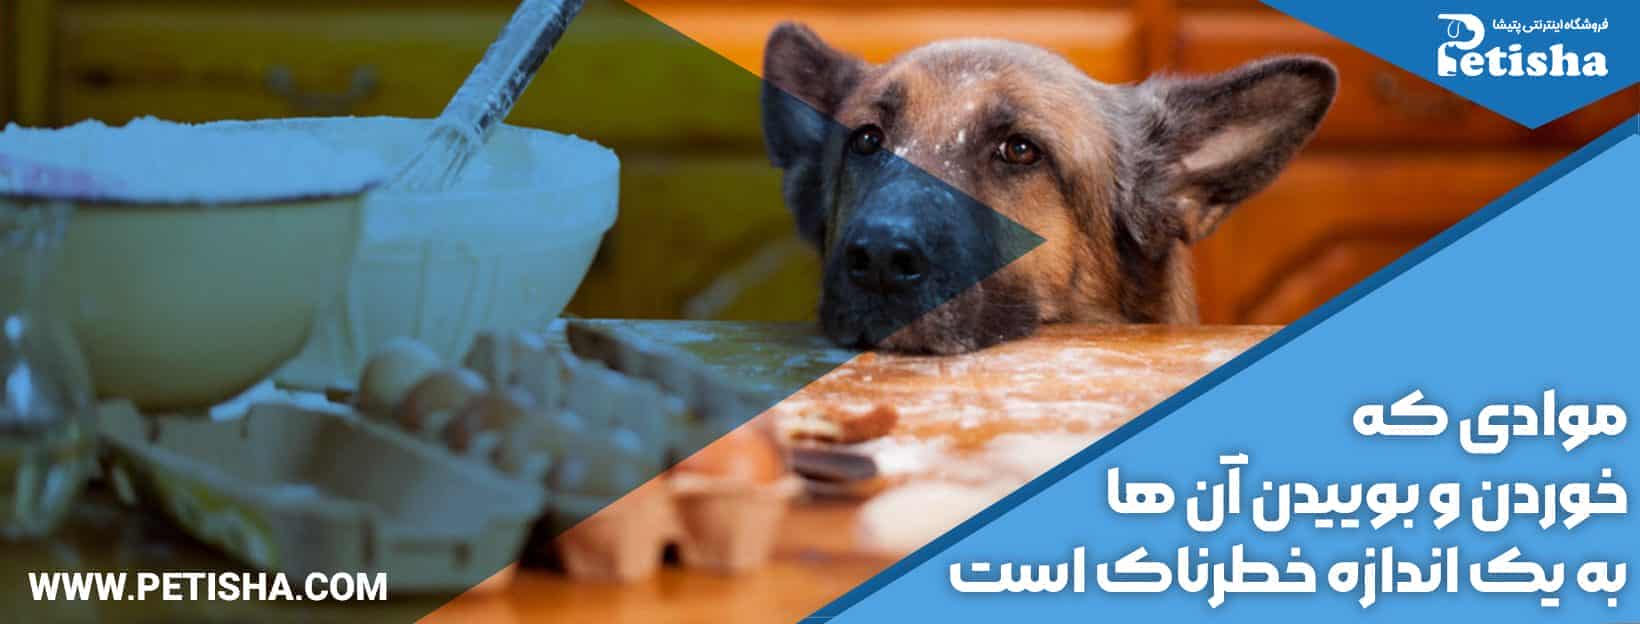 غذاهای ممنوعه برای سگ | غذاهای ممنوعه برای سگ